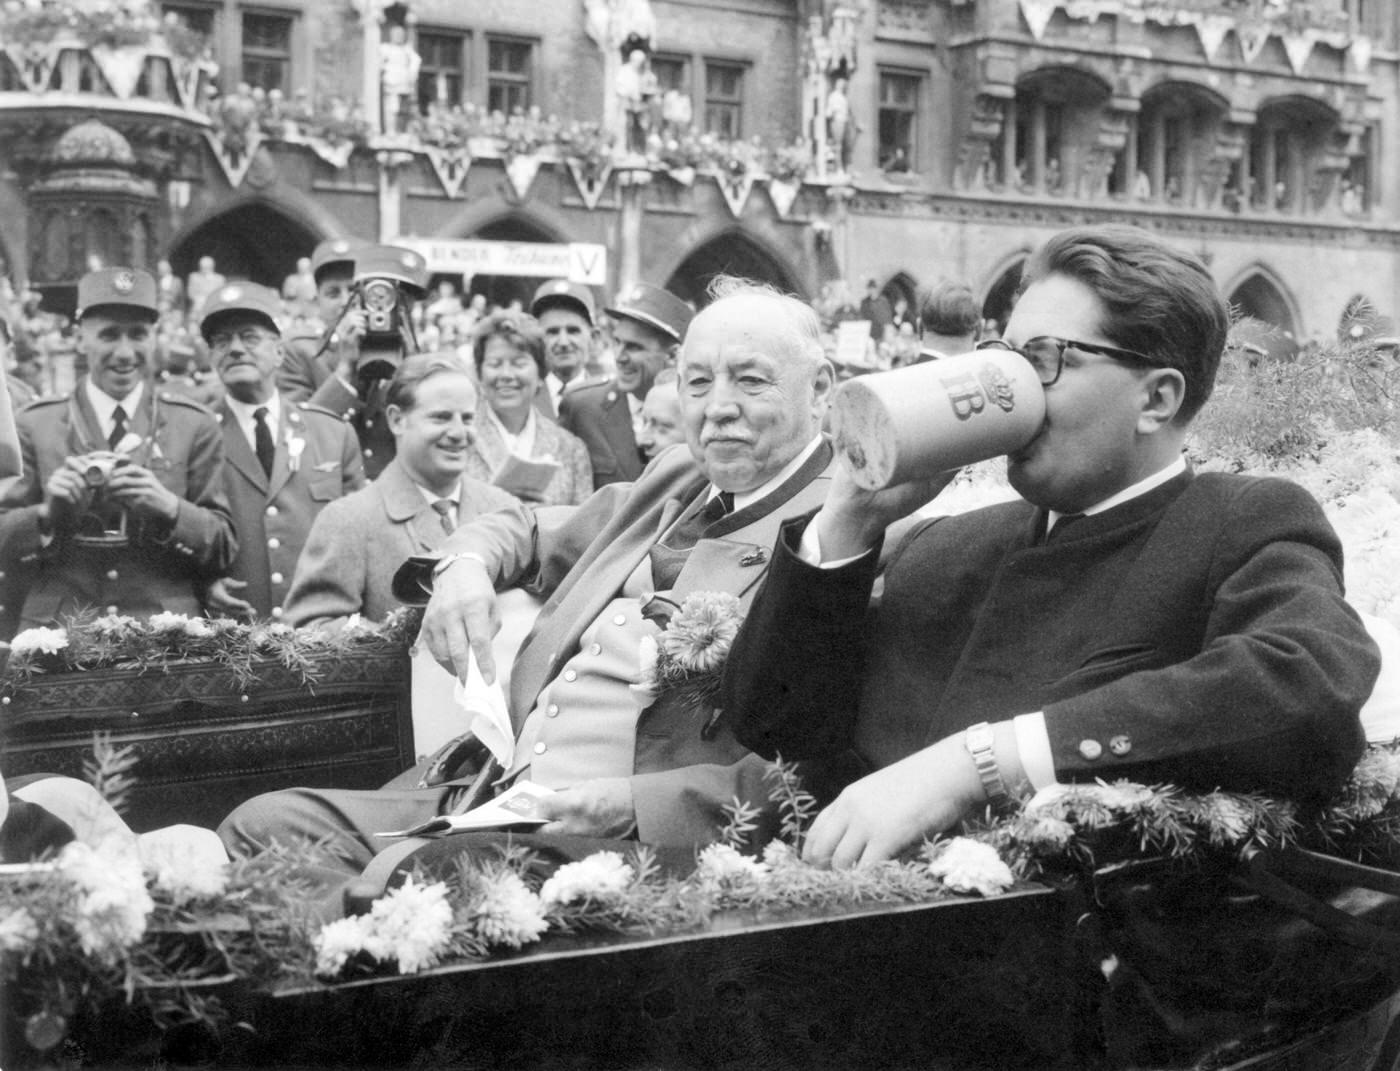 Mayor Hans-Jochen Vogel refreshes at Oktoberfest parade, 1960.